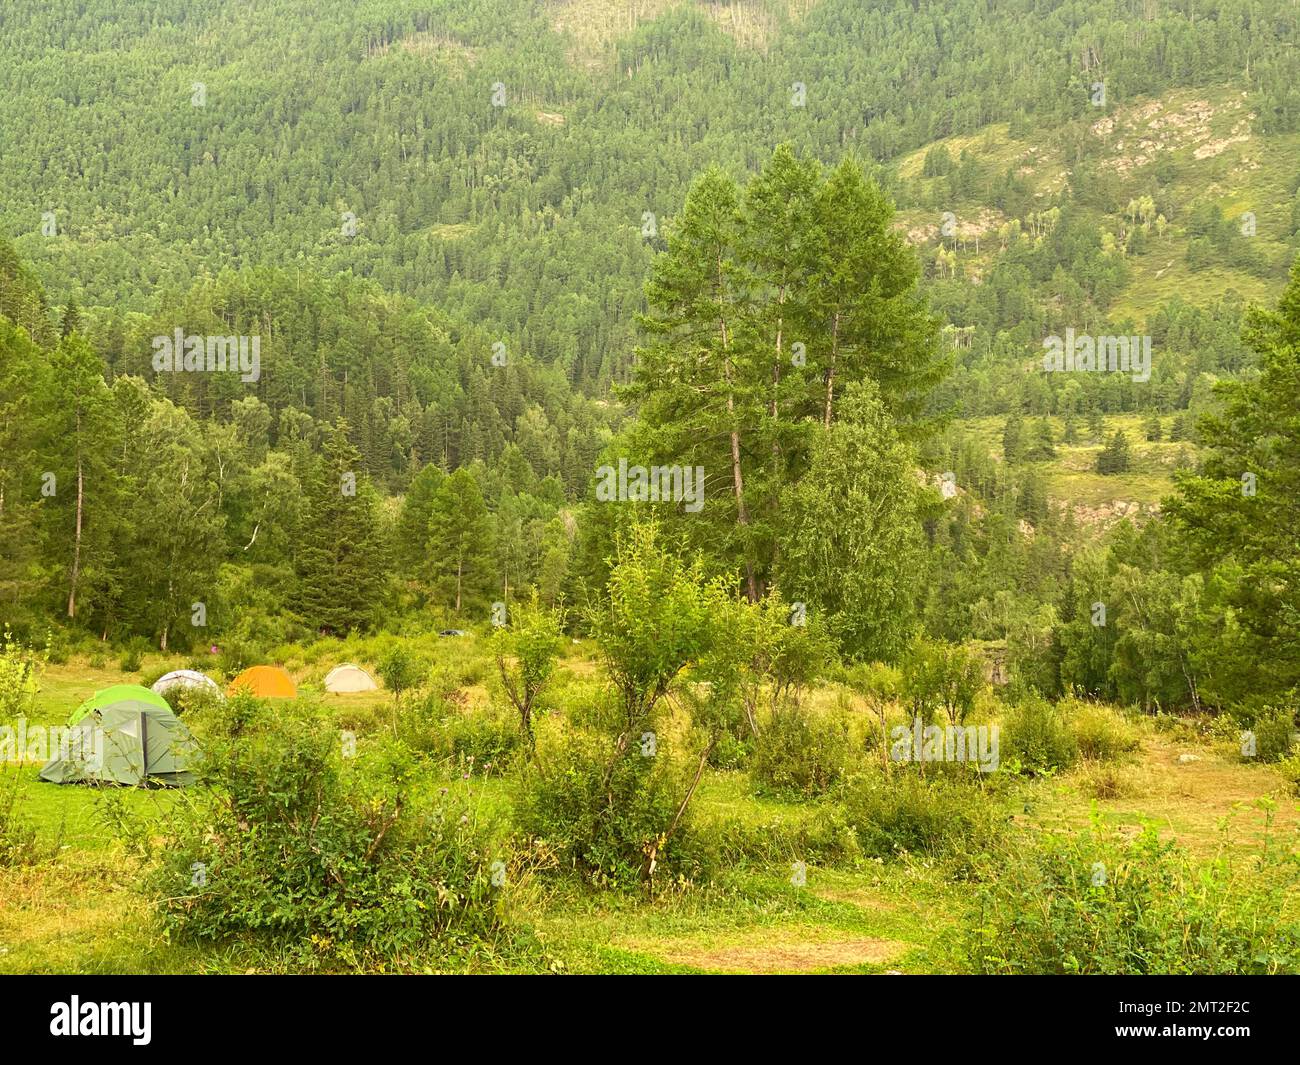 Des tentes touristiques se trouvent dans l'herbe de la forêt sur le fond de la montagne. Banque D'Images